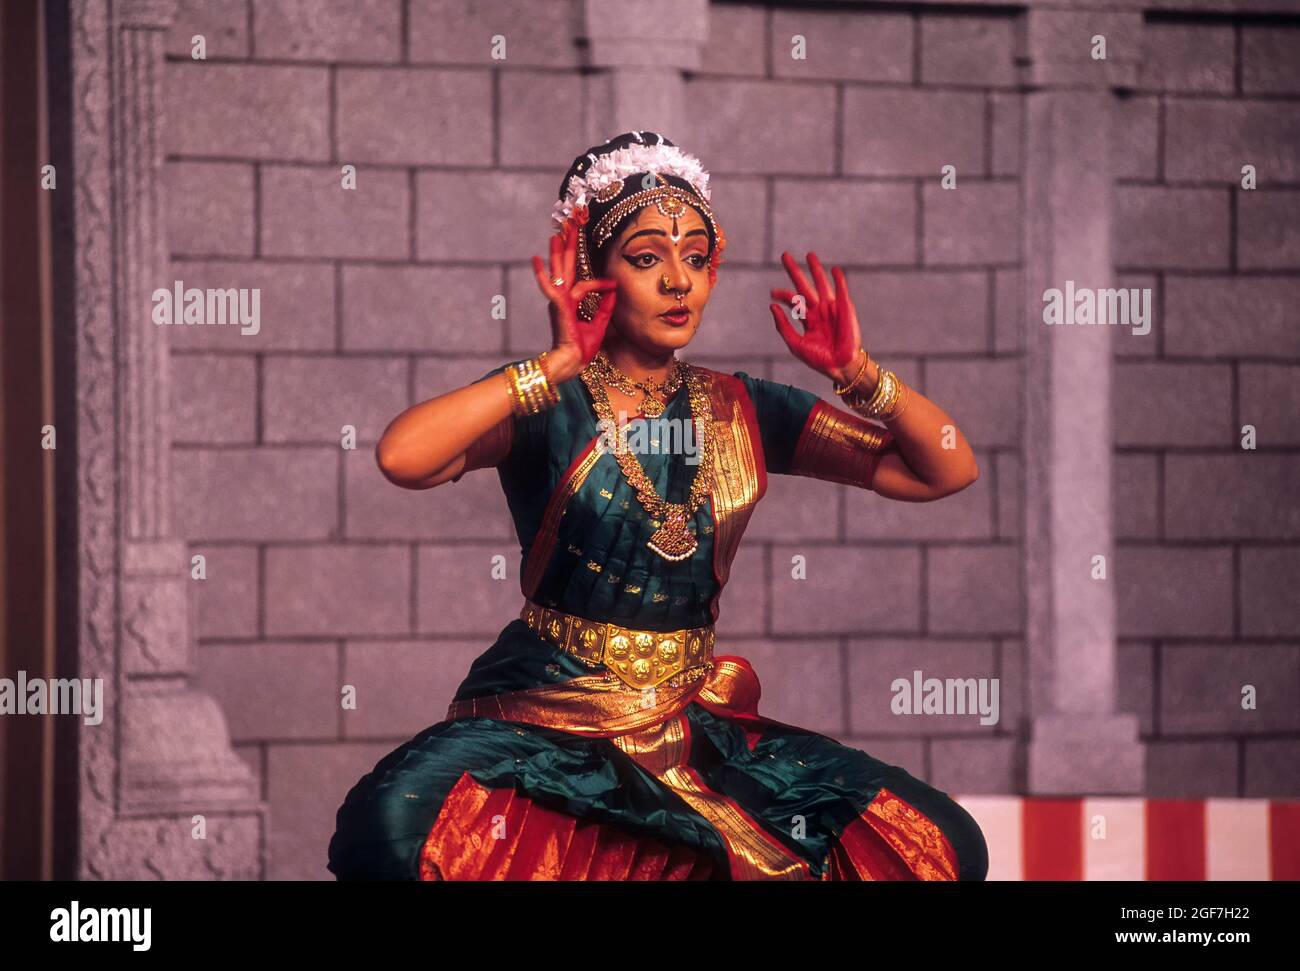 Bharatanatyam Dance: Origin, History, Dress & Dancers